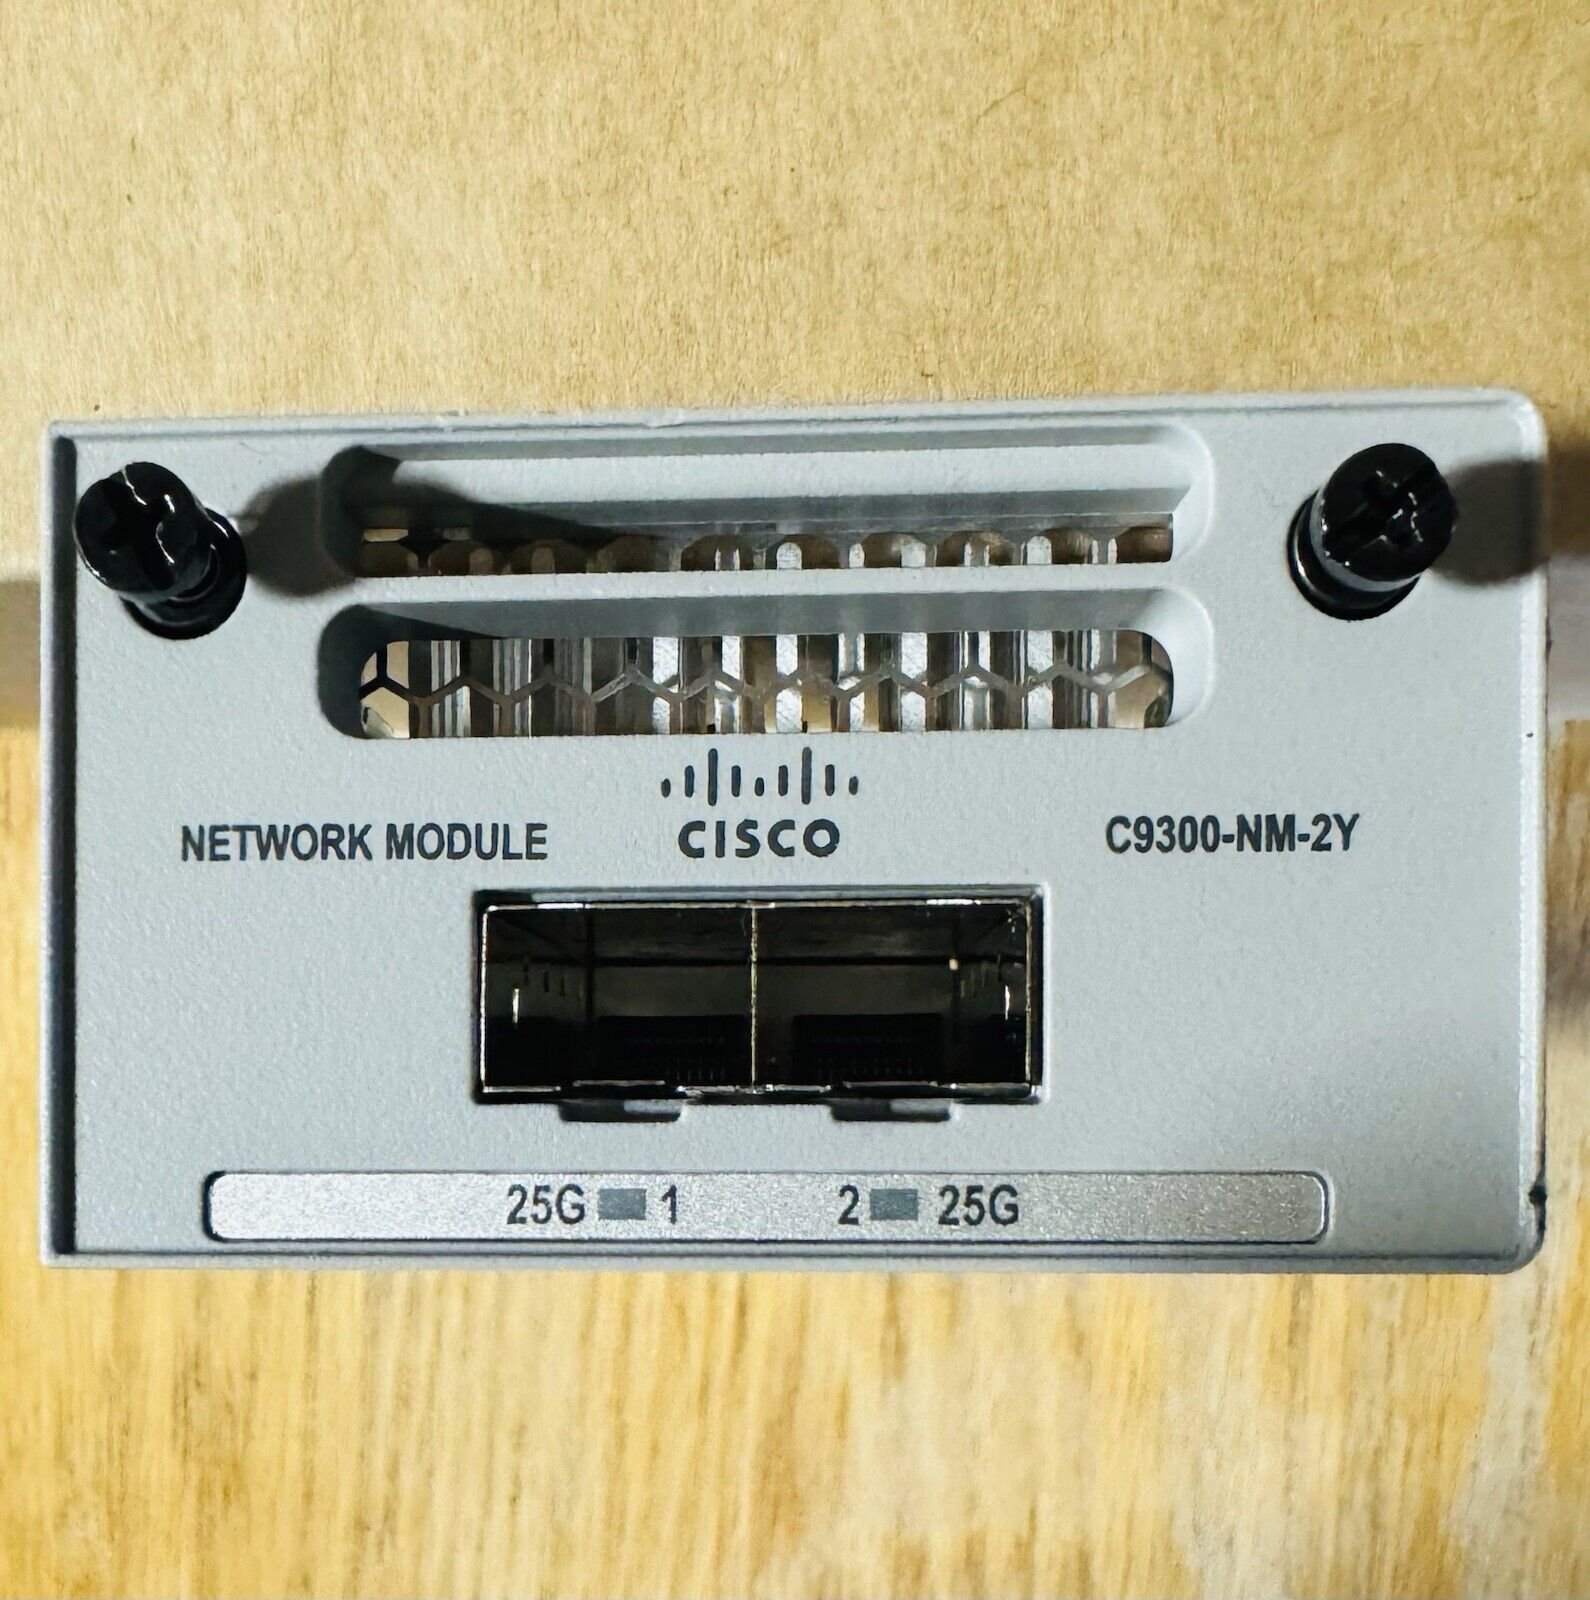 Genuine Cisco C9300-NM-2Y (2x25G) Uplink Network Module